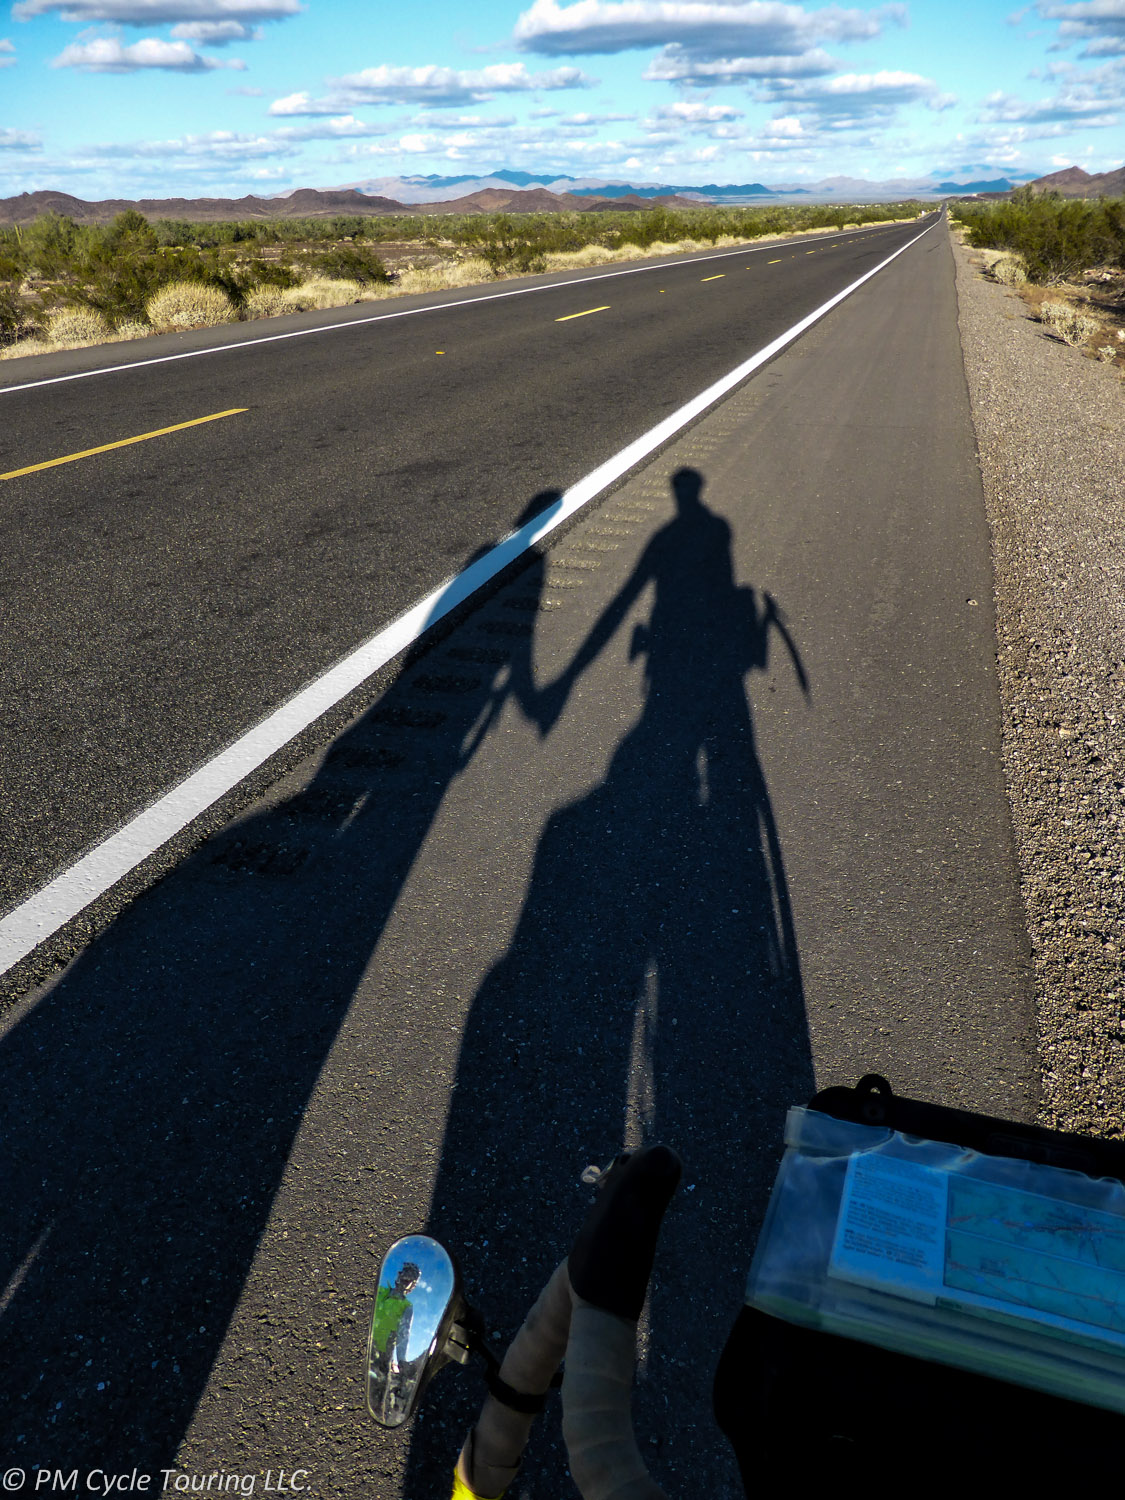 Shadows of Pam & Matt on a road outside Hope Arizona.